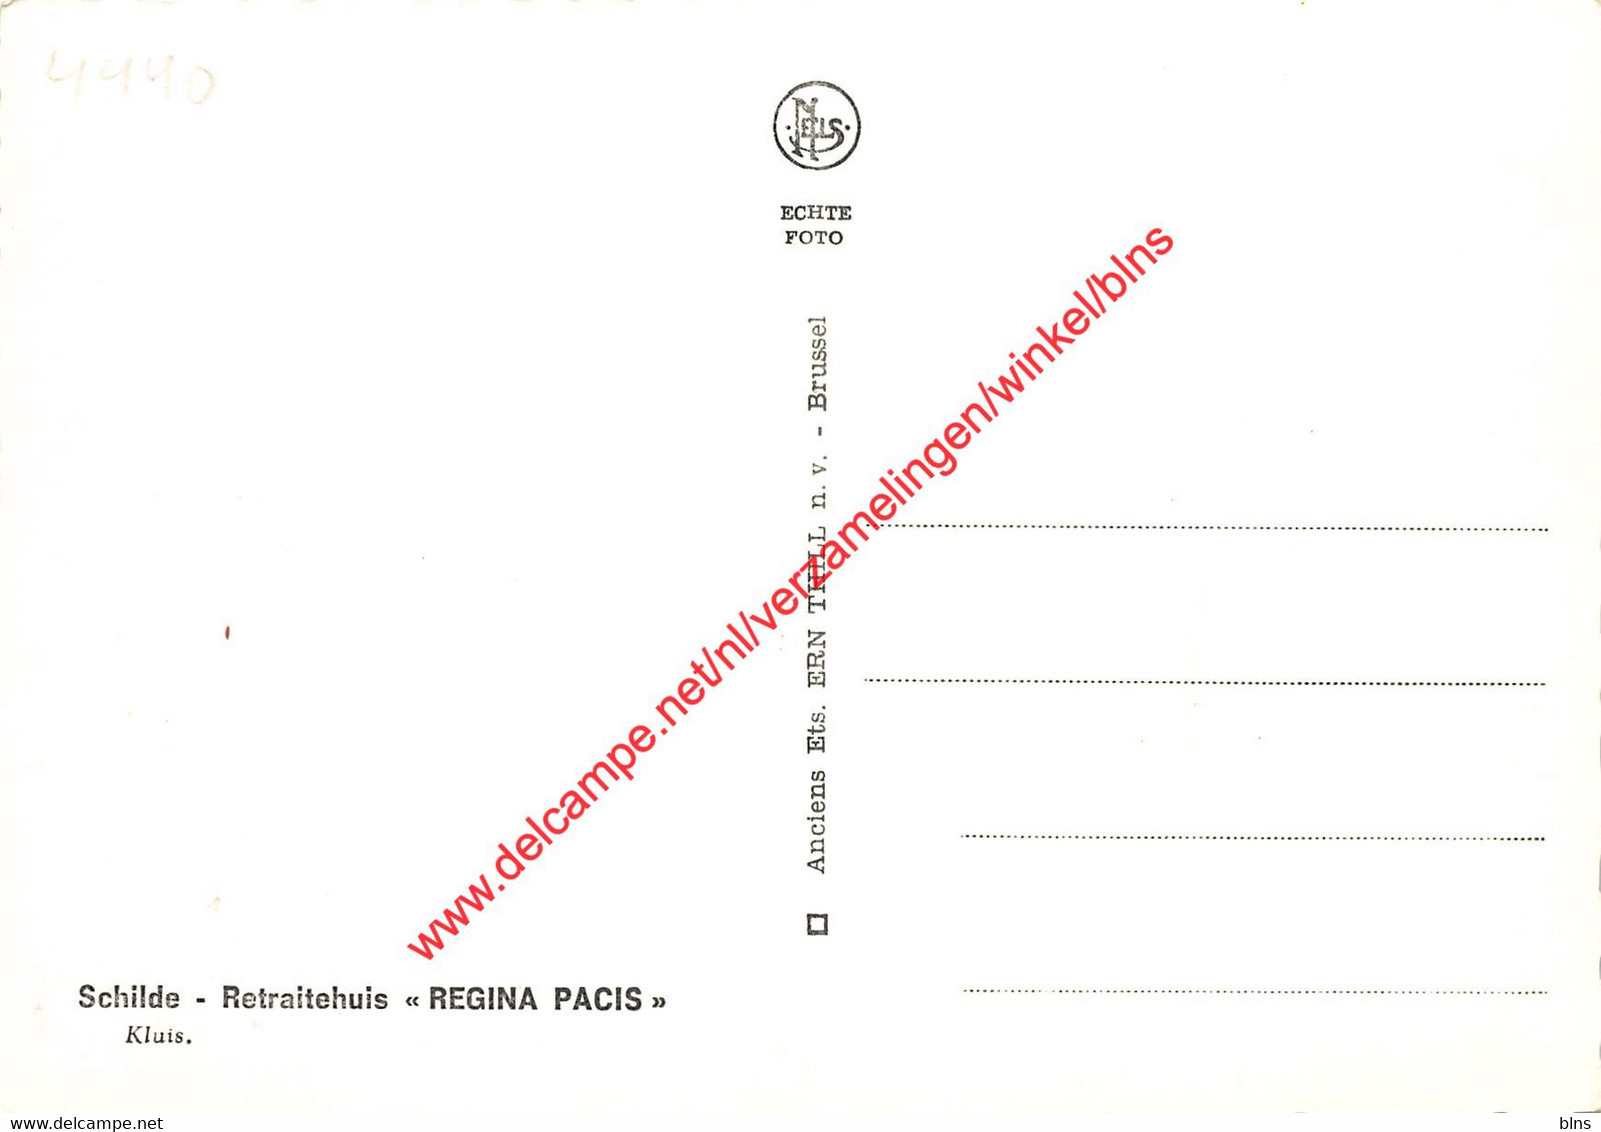 Retraitehuis Regina Pacis - Kluis - Schilde - Schilde